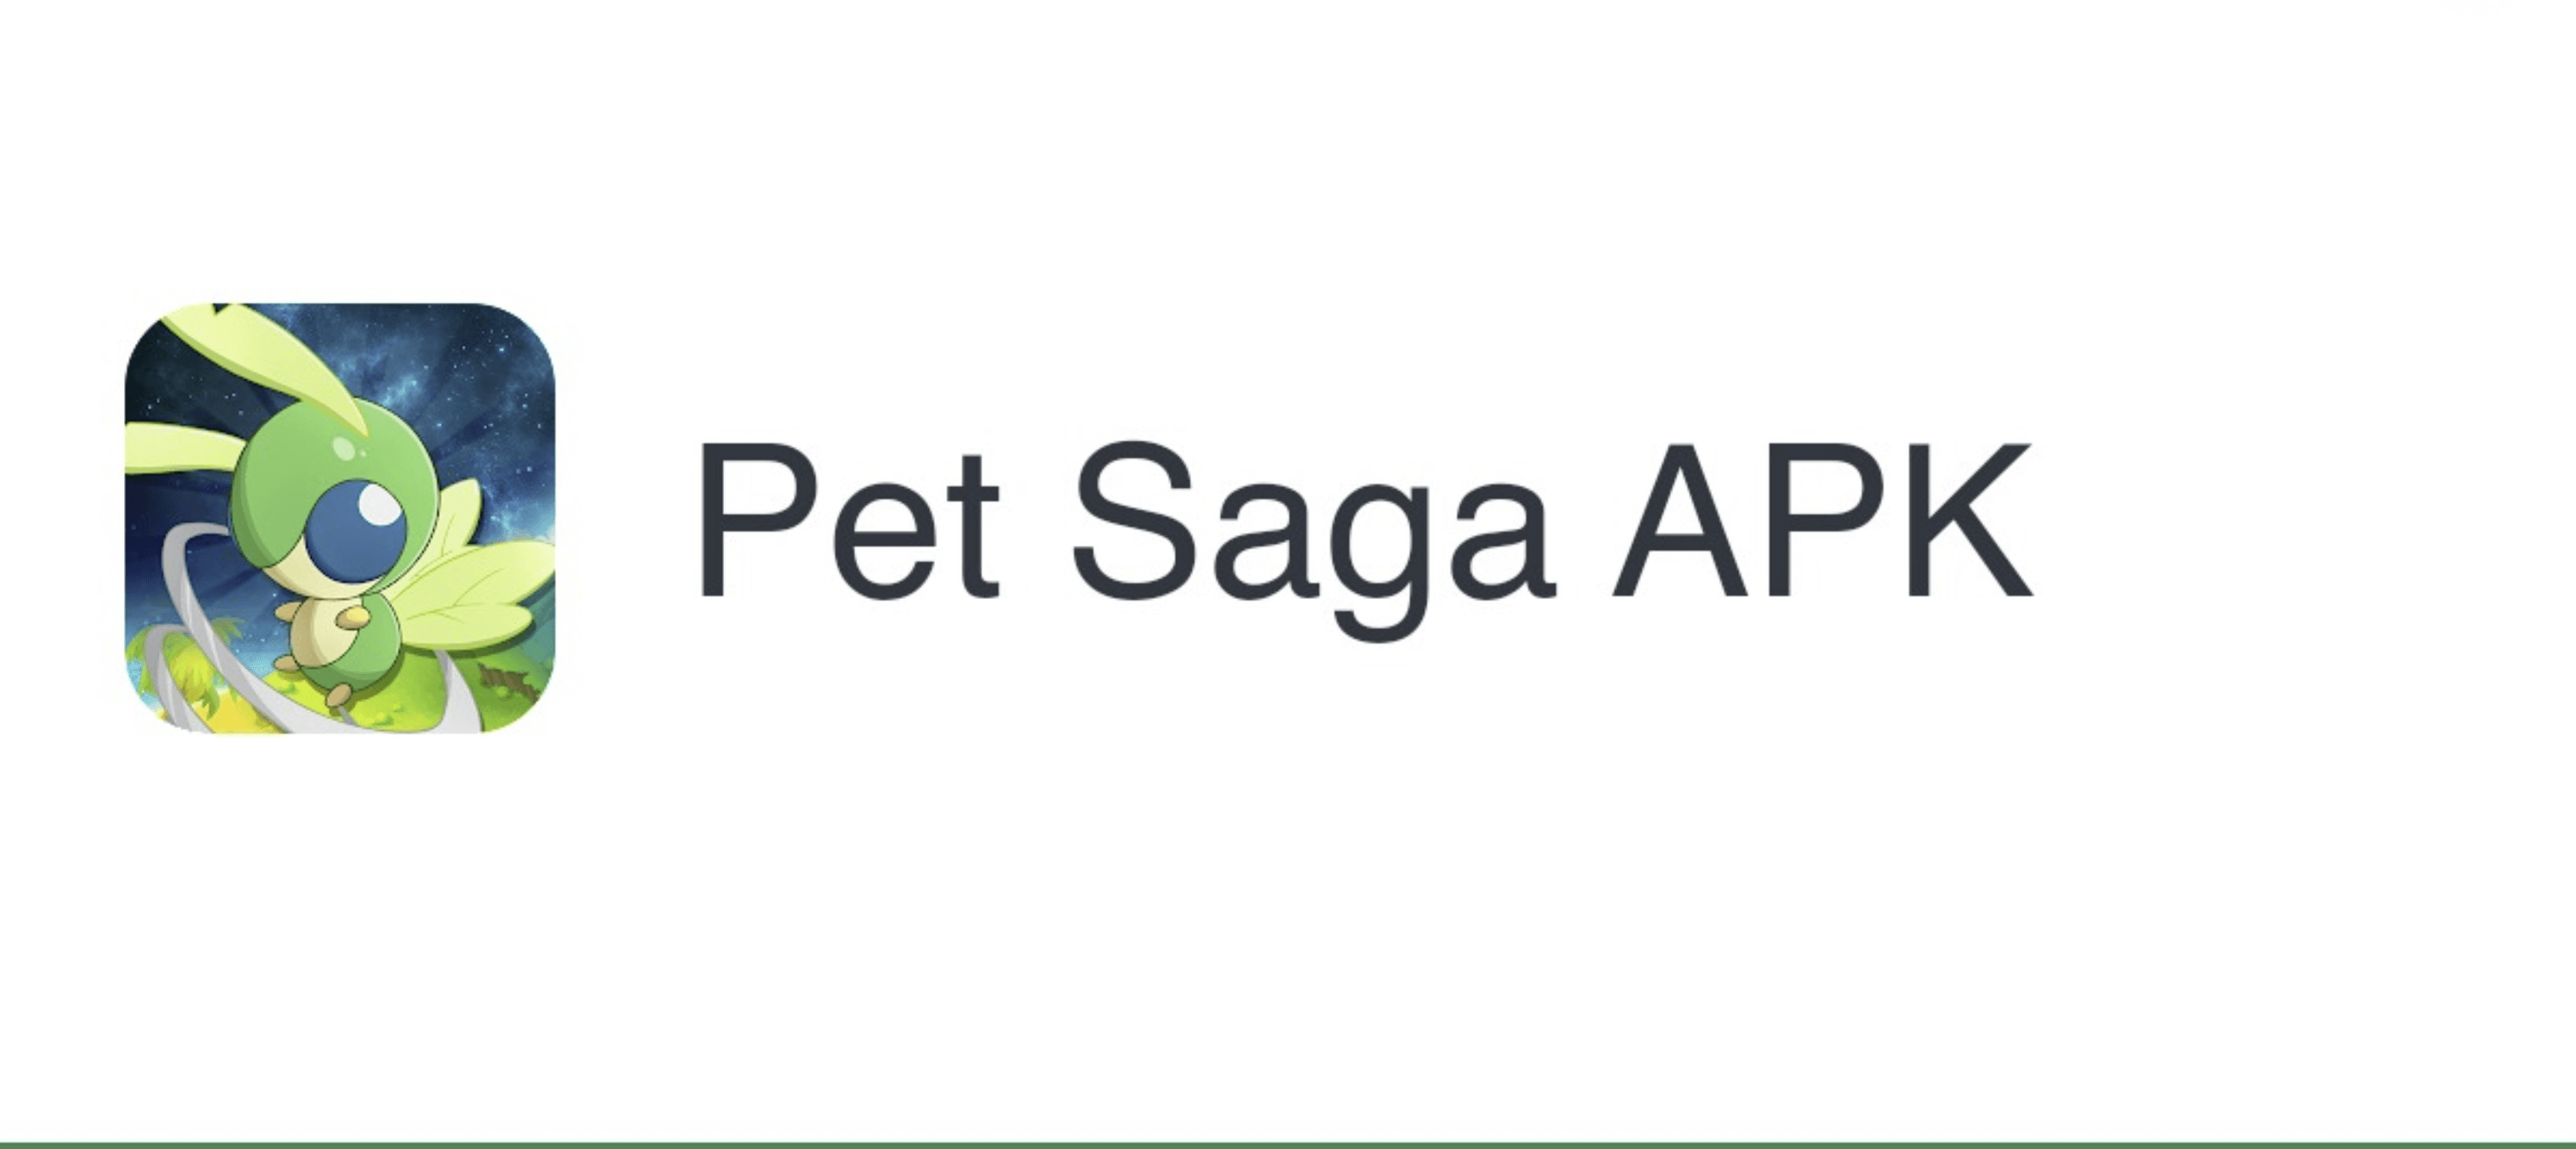 Pet Saga